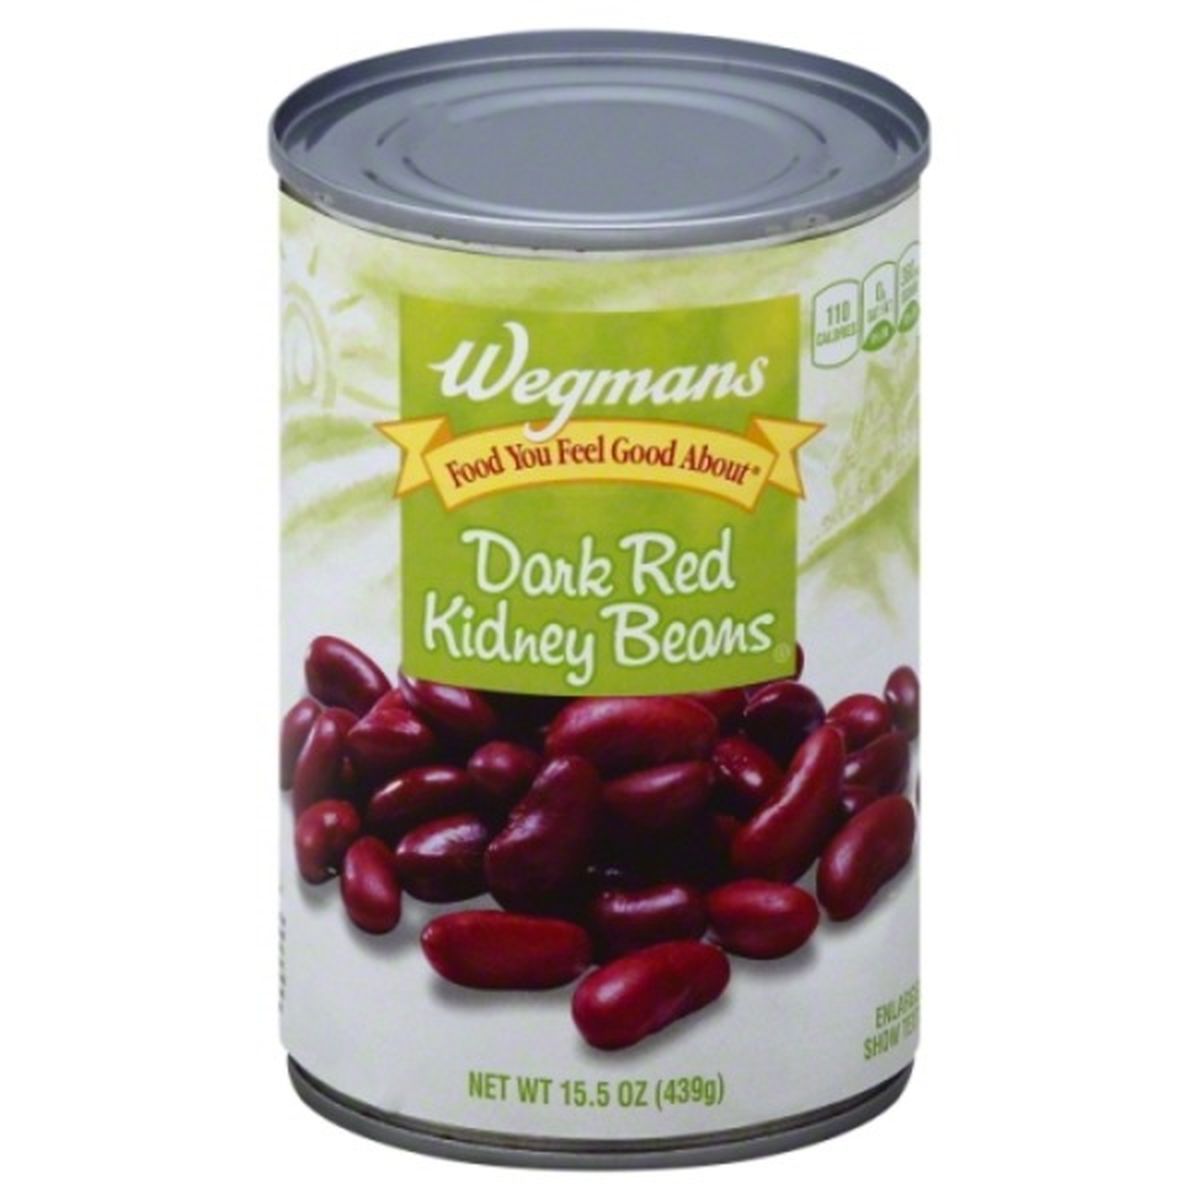 Calories in Wegmans Dark Red Kidney Beans